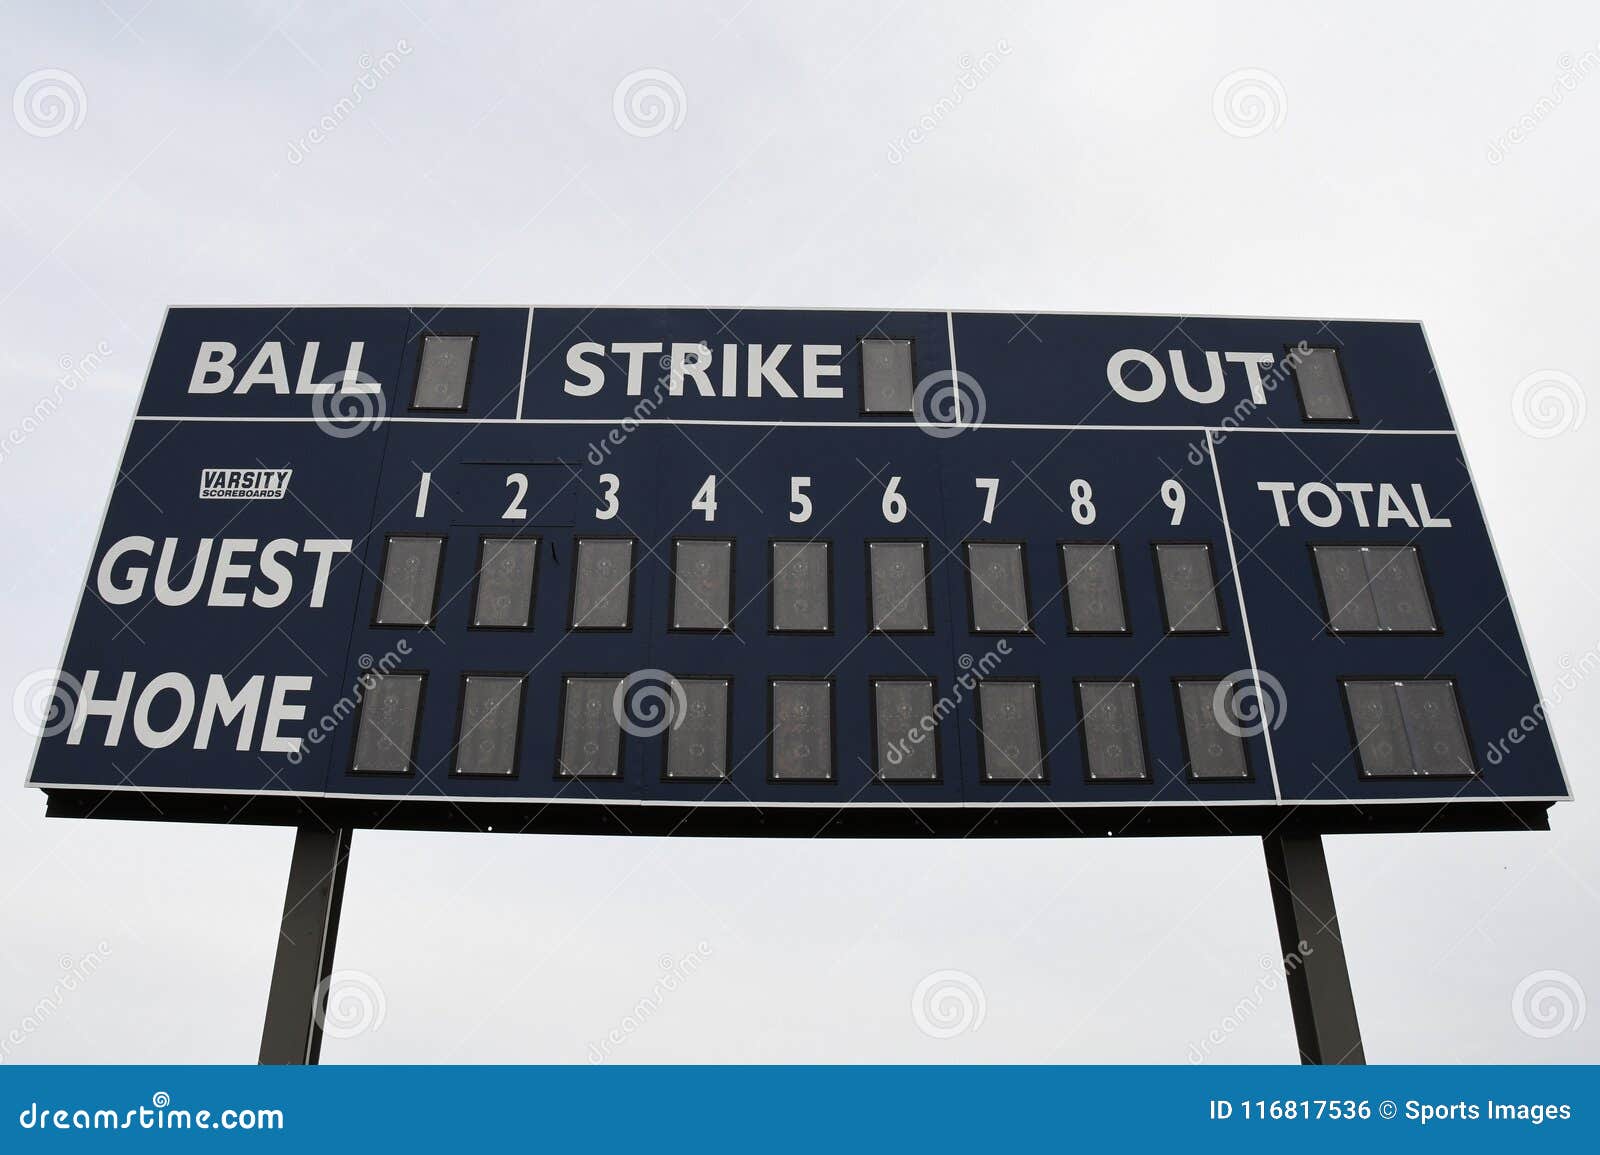 baseball scoreboard.